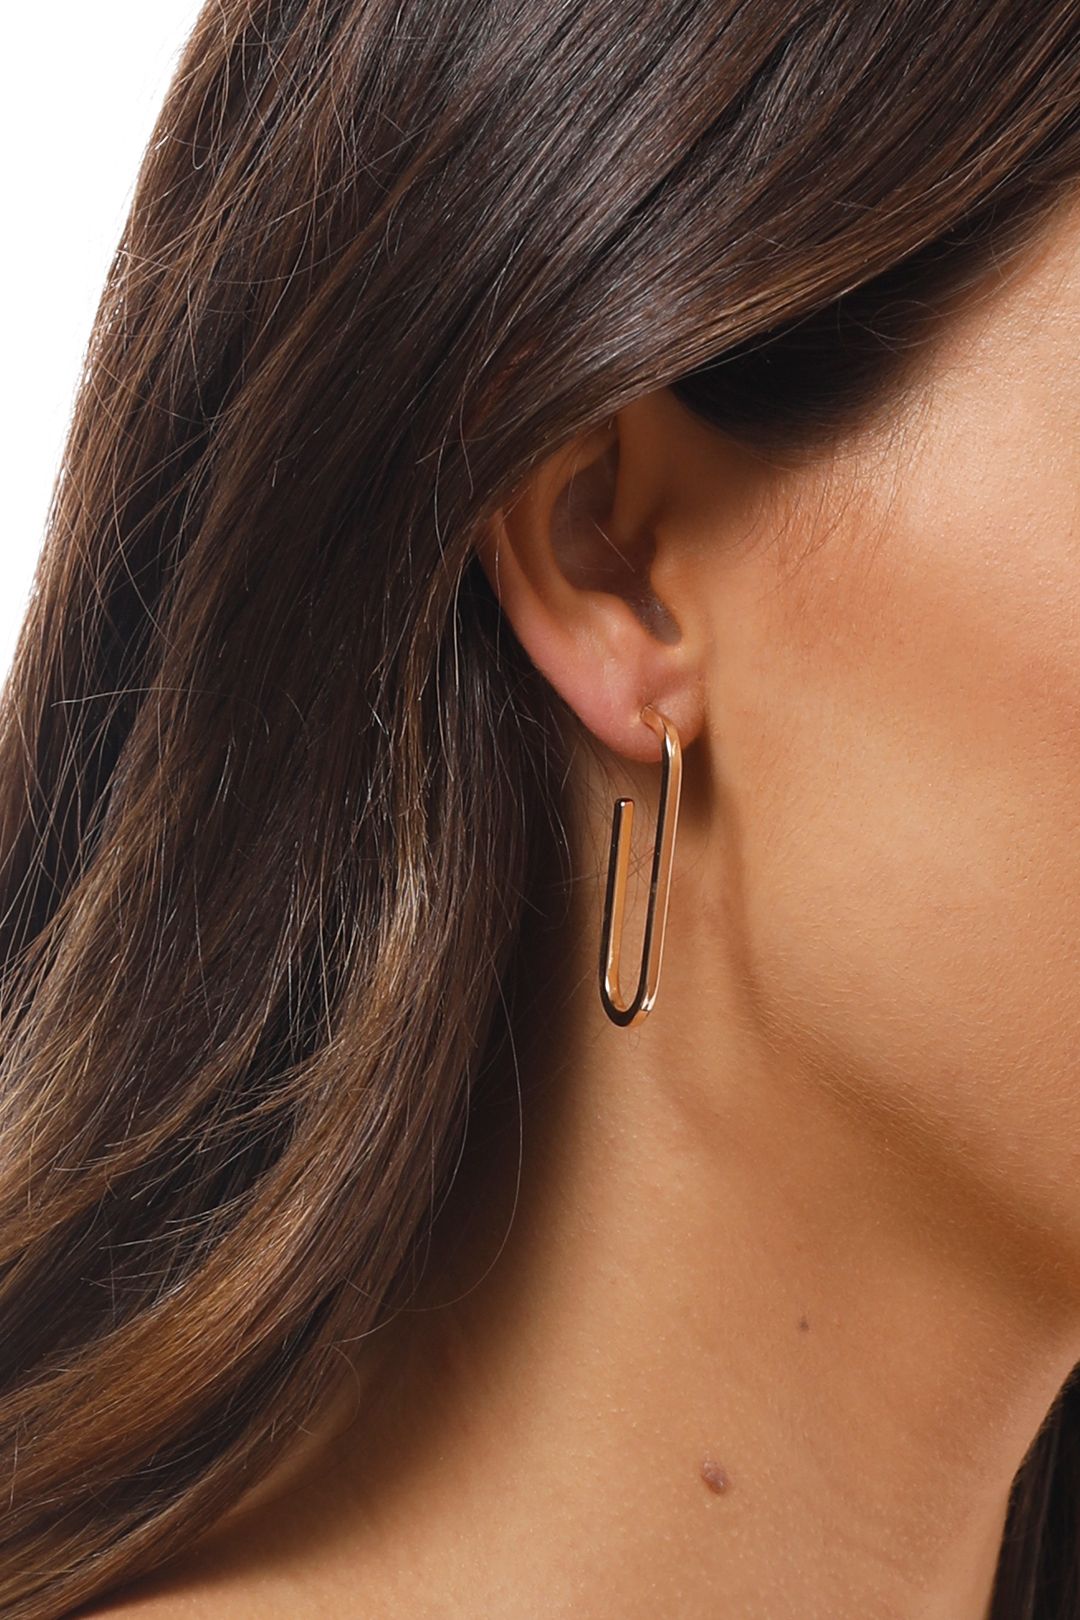 Adorne - Single Link Stud Earrings - Gold - Side